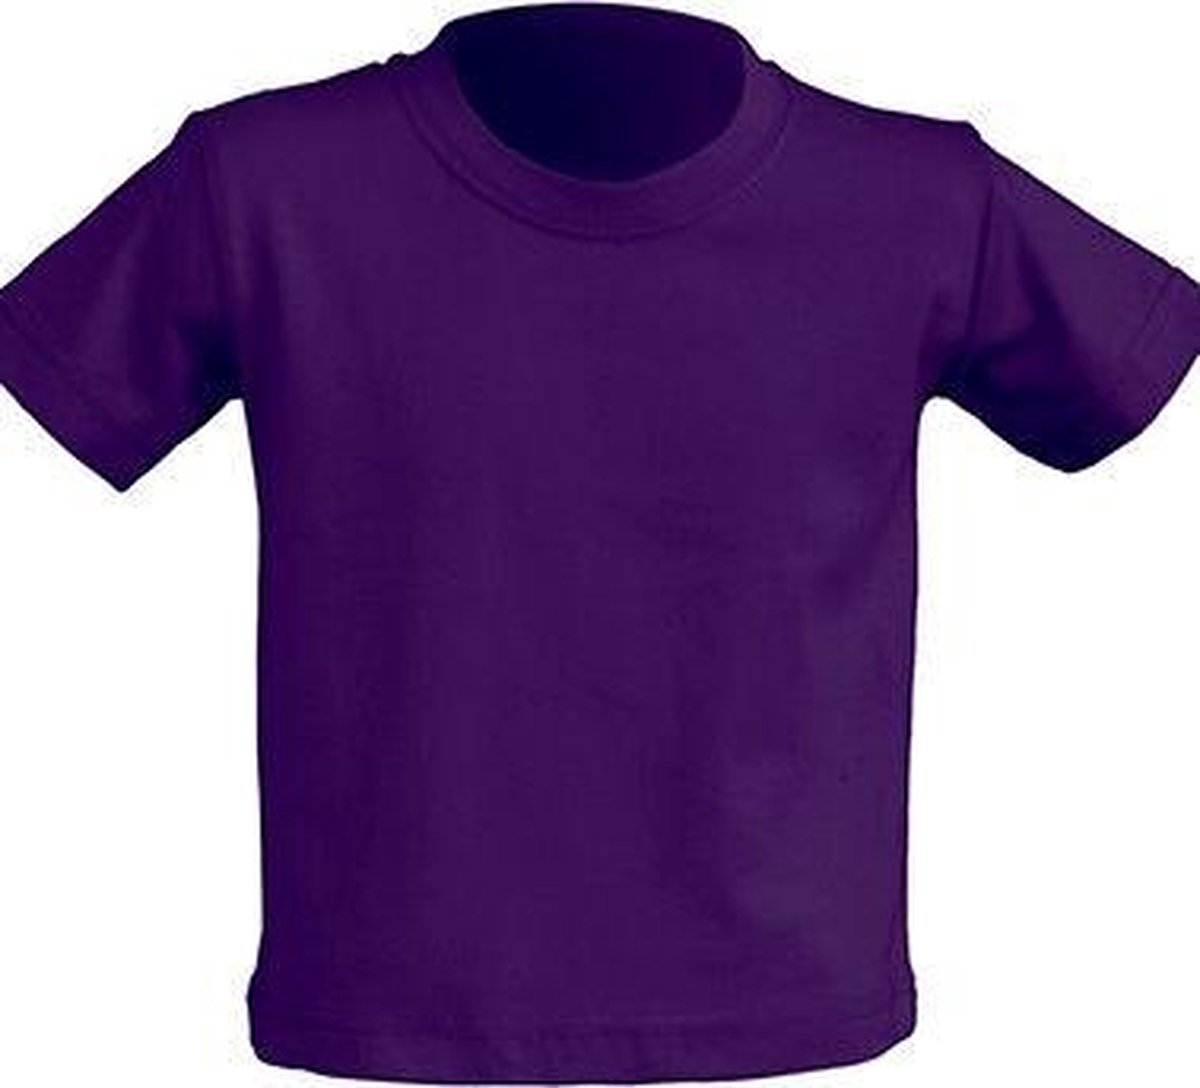 JHK Baby t-shirtjes in purple maat 1 jaar - set van 5 stuks